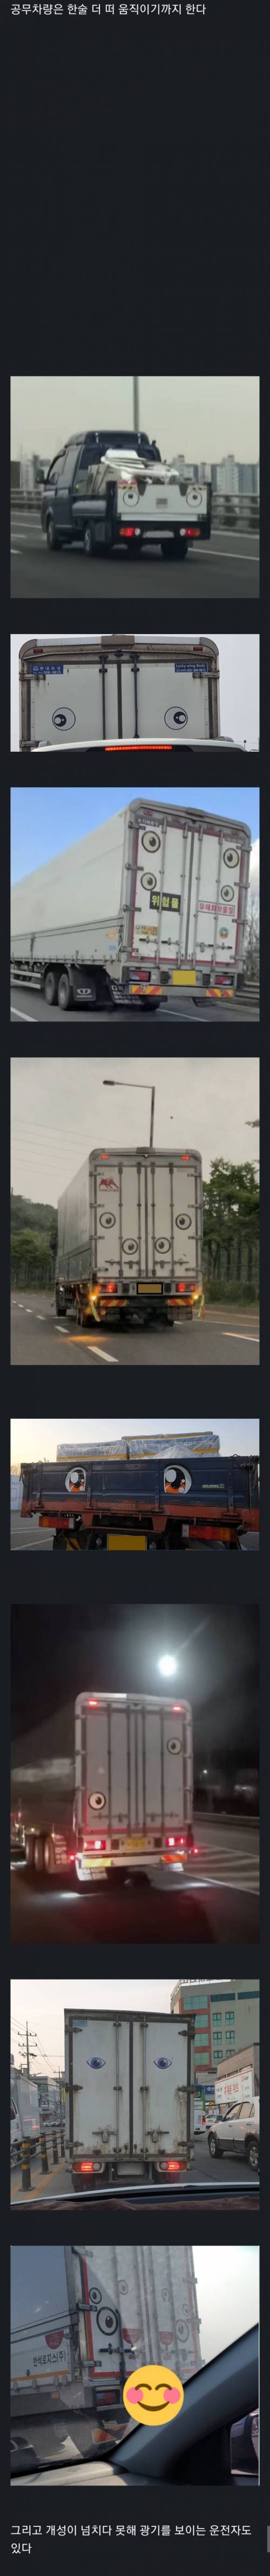 최근 자주 보이는 트럭 눈깔 스티커.jpg